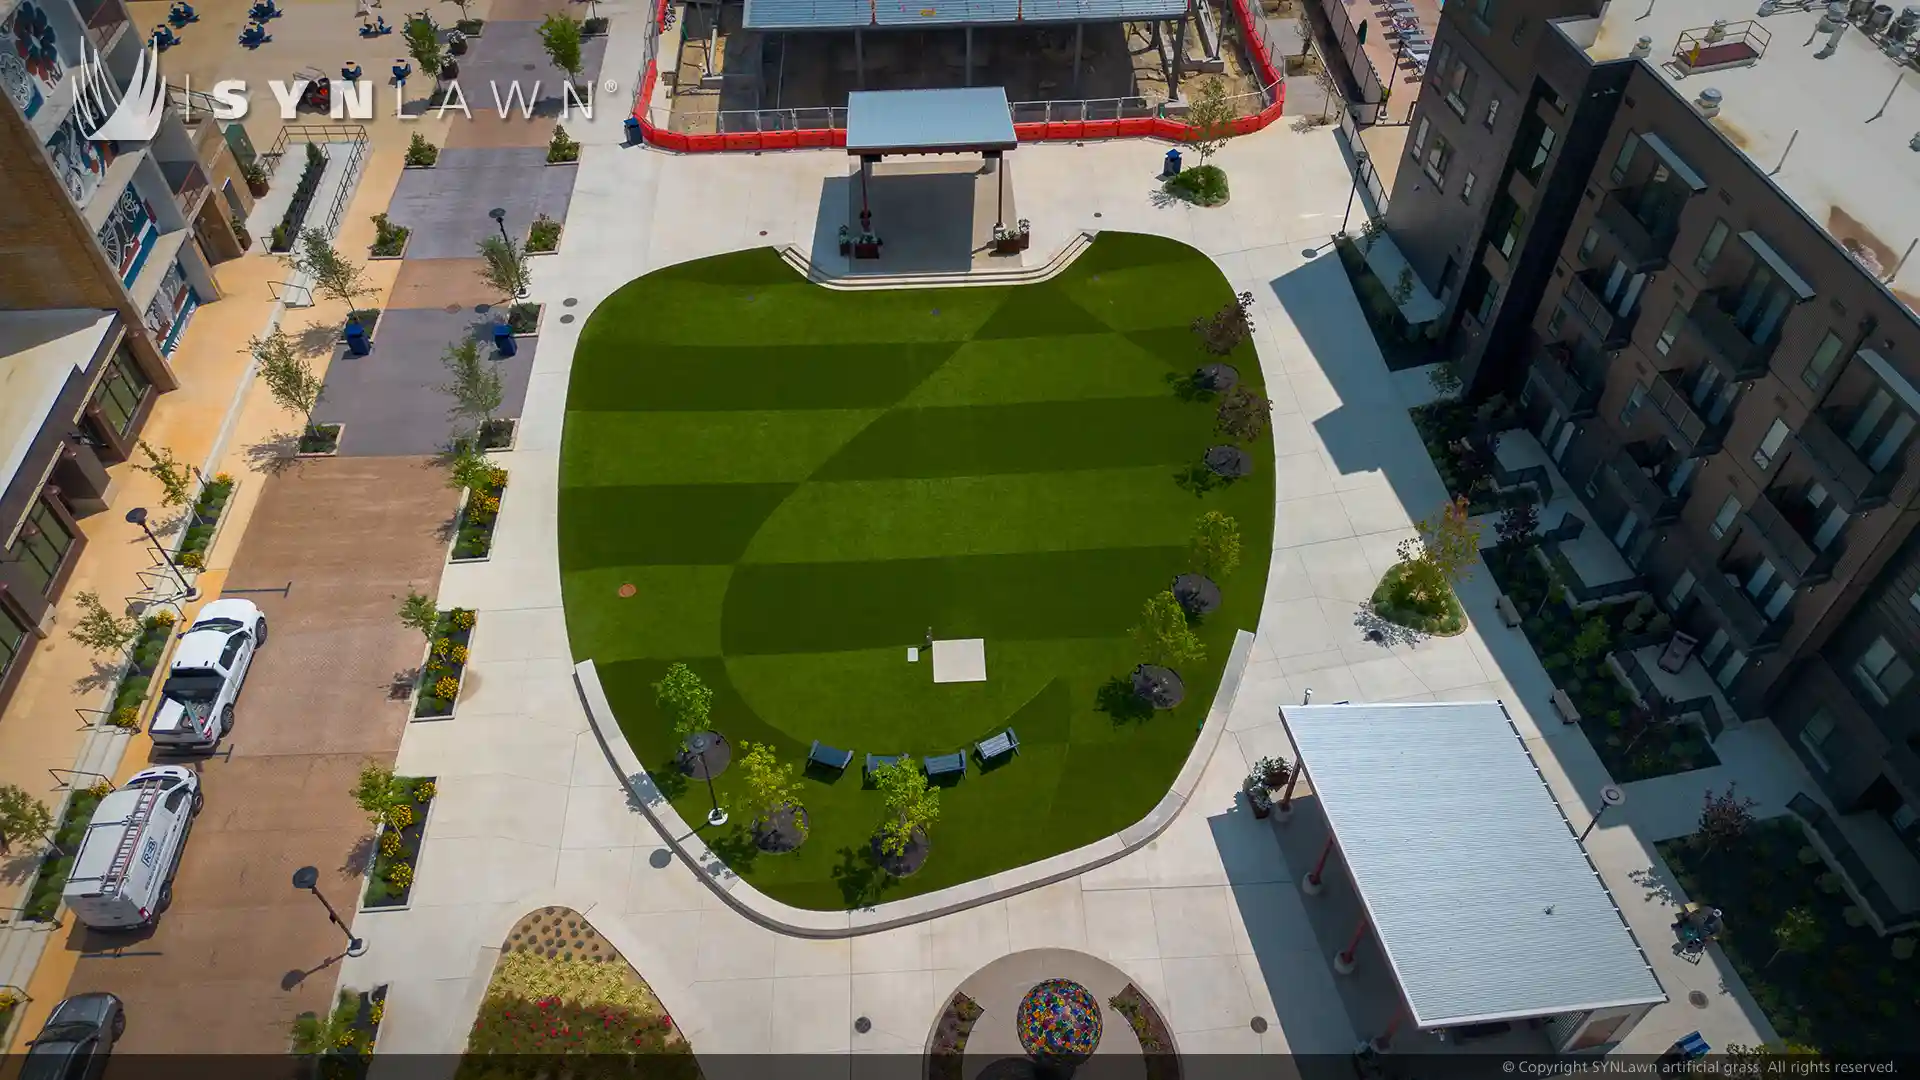 Cincinnati’s Factory 52 Offers Imaginative Green Spaces